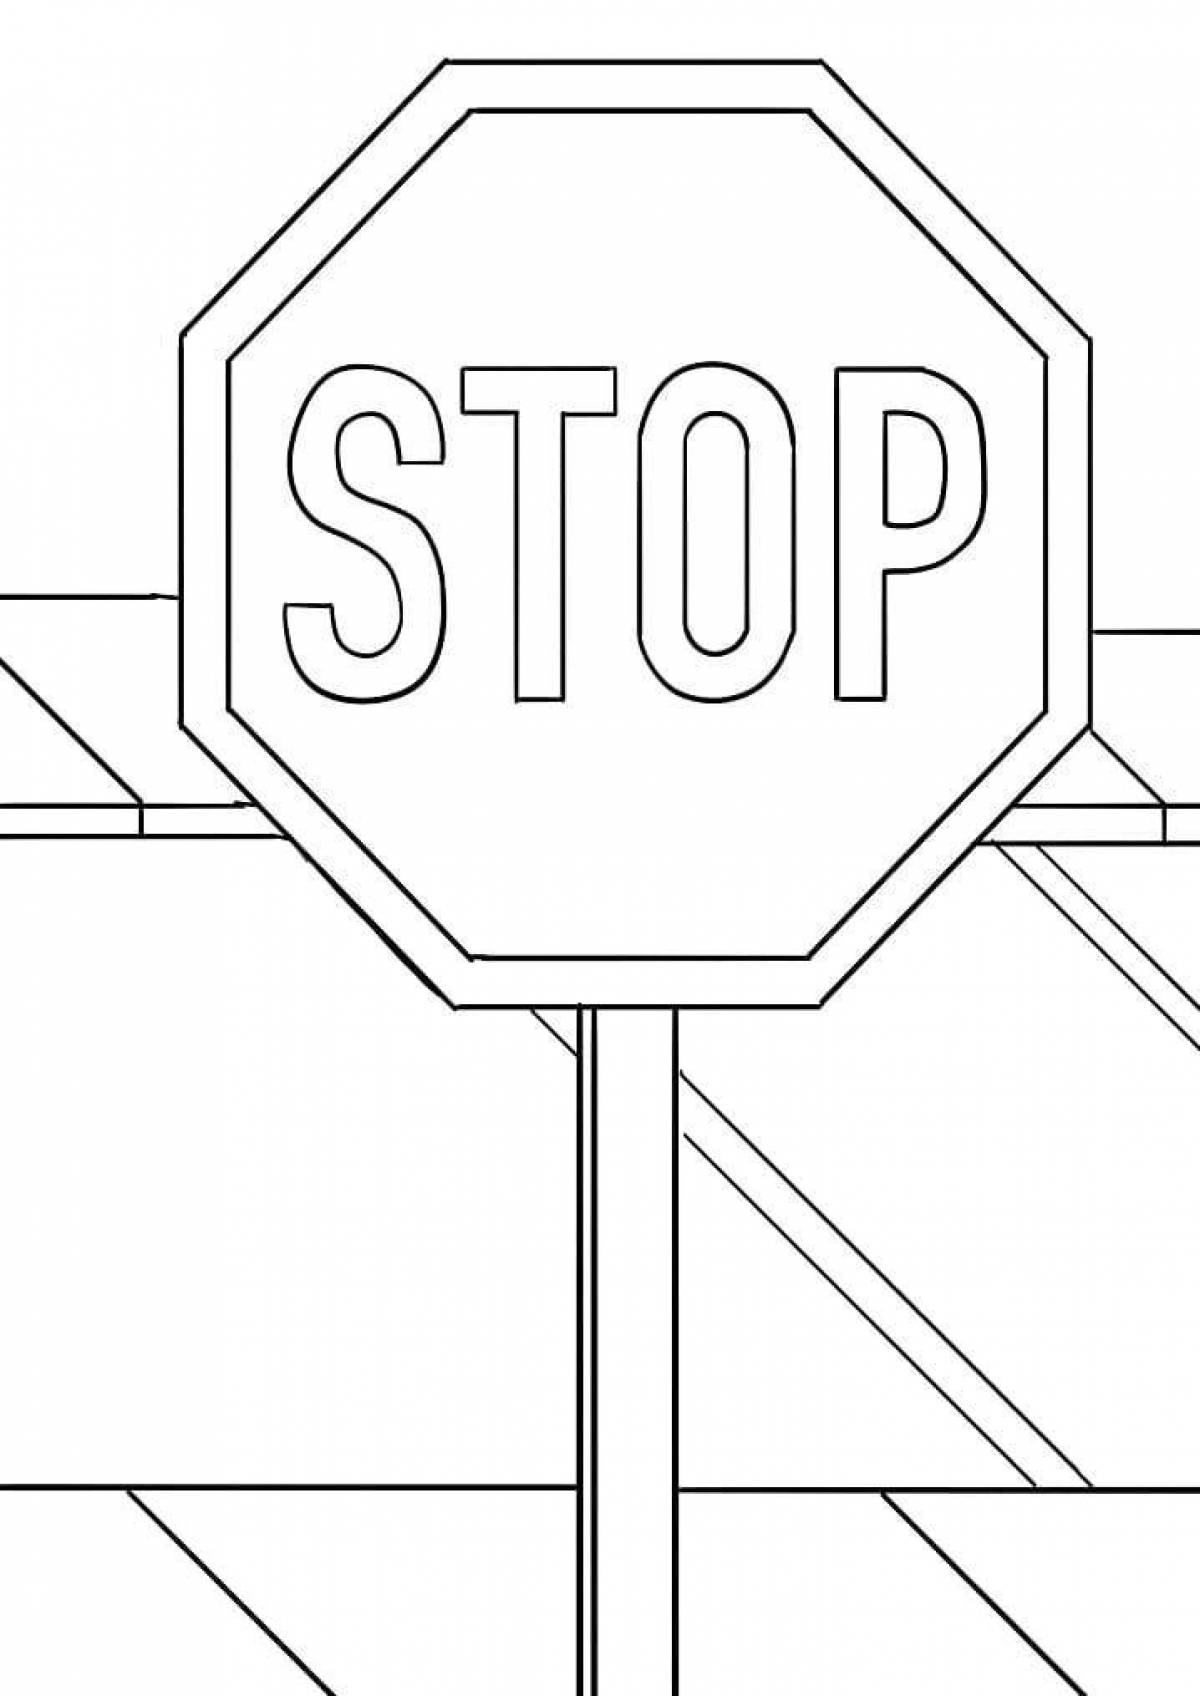 Раскрашивать дорожный знак. Дорожные знаки раскраска. Дорожные знаки раскраска для детей. Раскраски дорожных знаков. Раскраска знаки дорожного движения для детей.